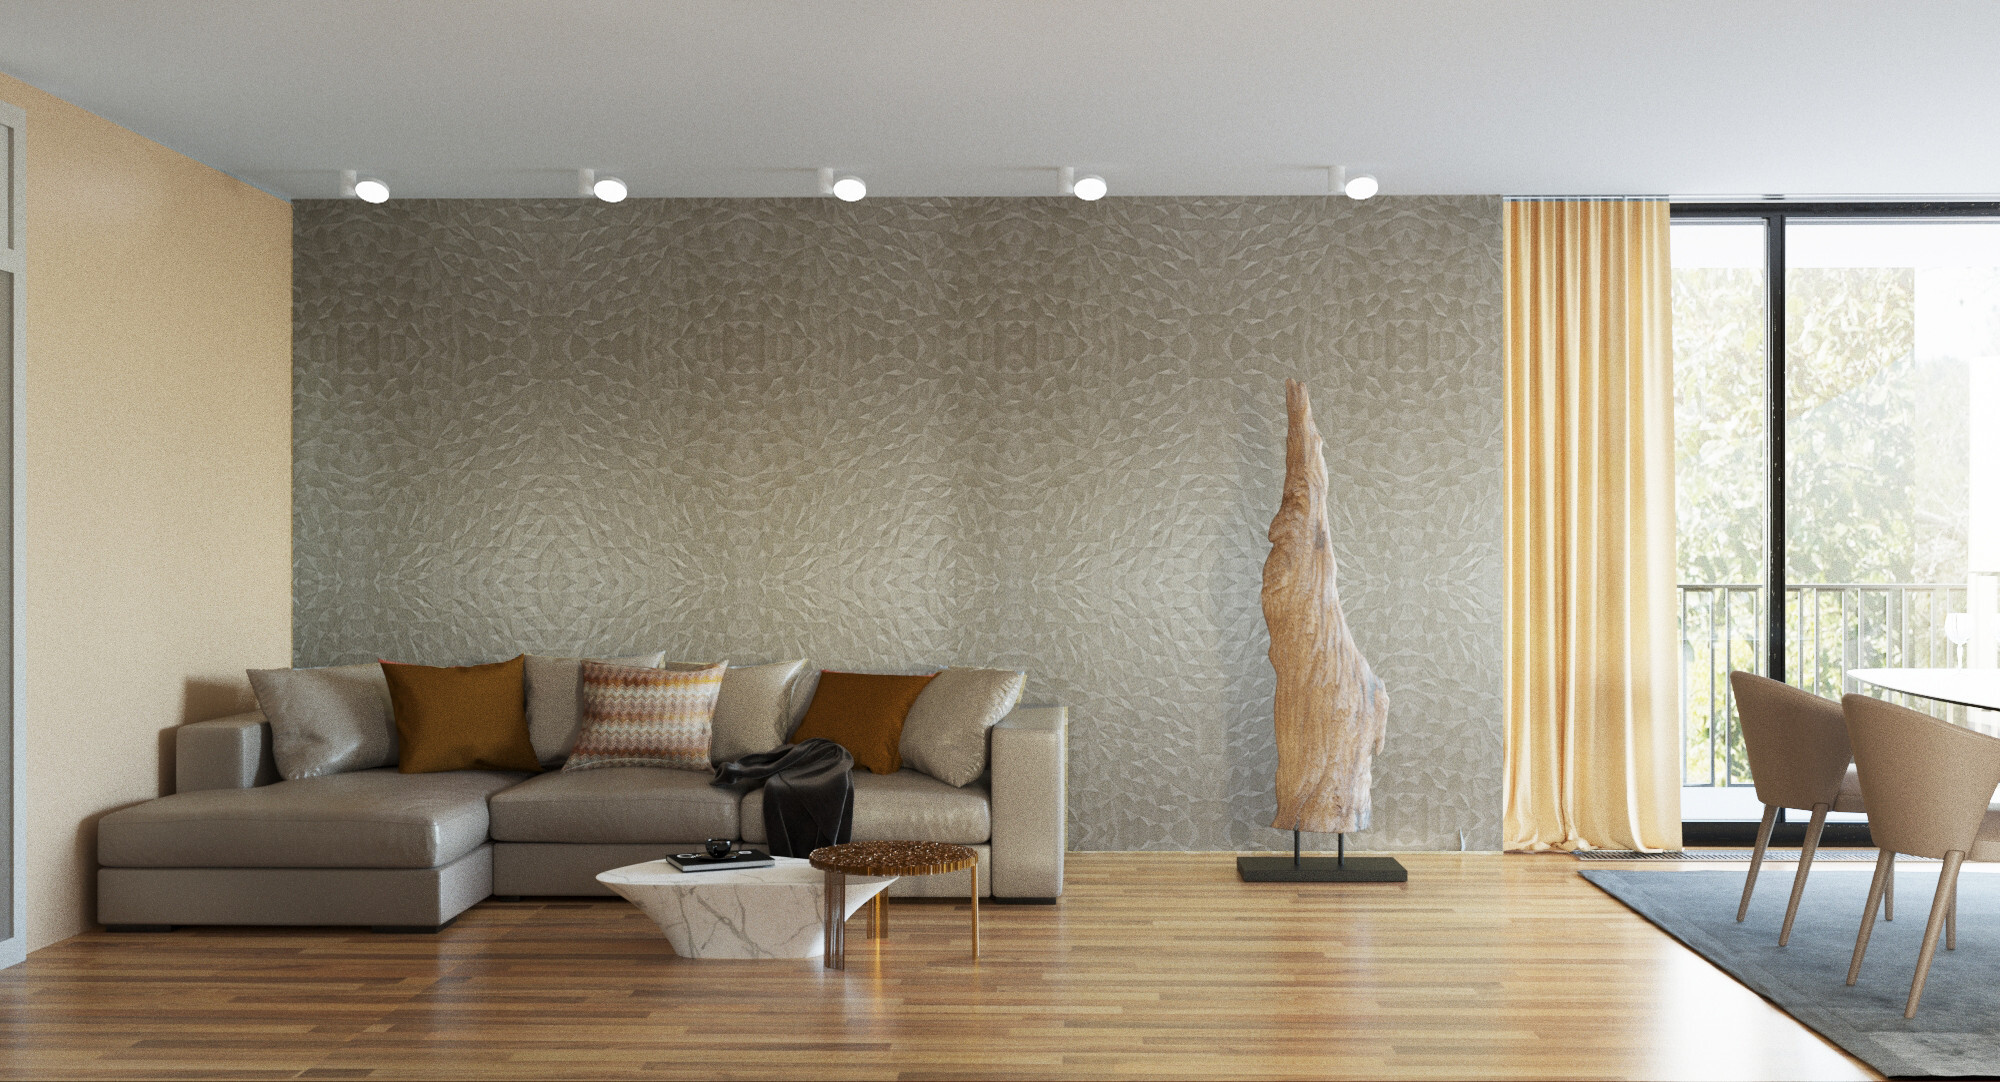 Интерьер гостиной с рейками с подсветкой, подсветкой настенной и подсветкой светодиодной в современном стиле